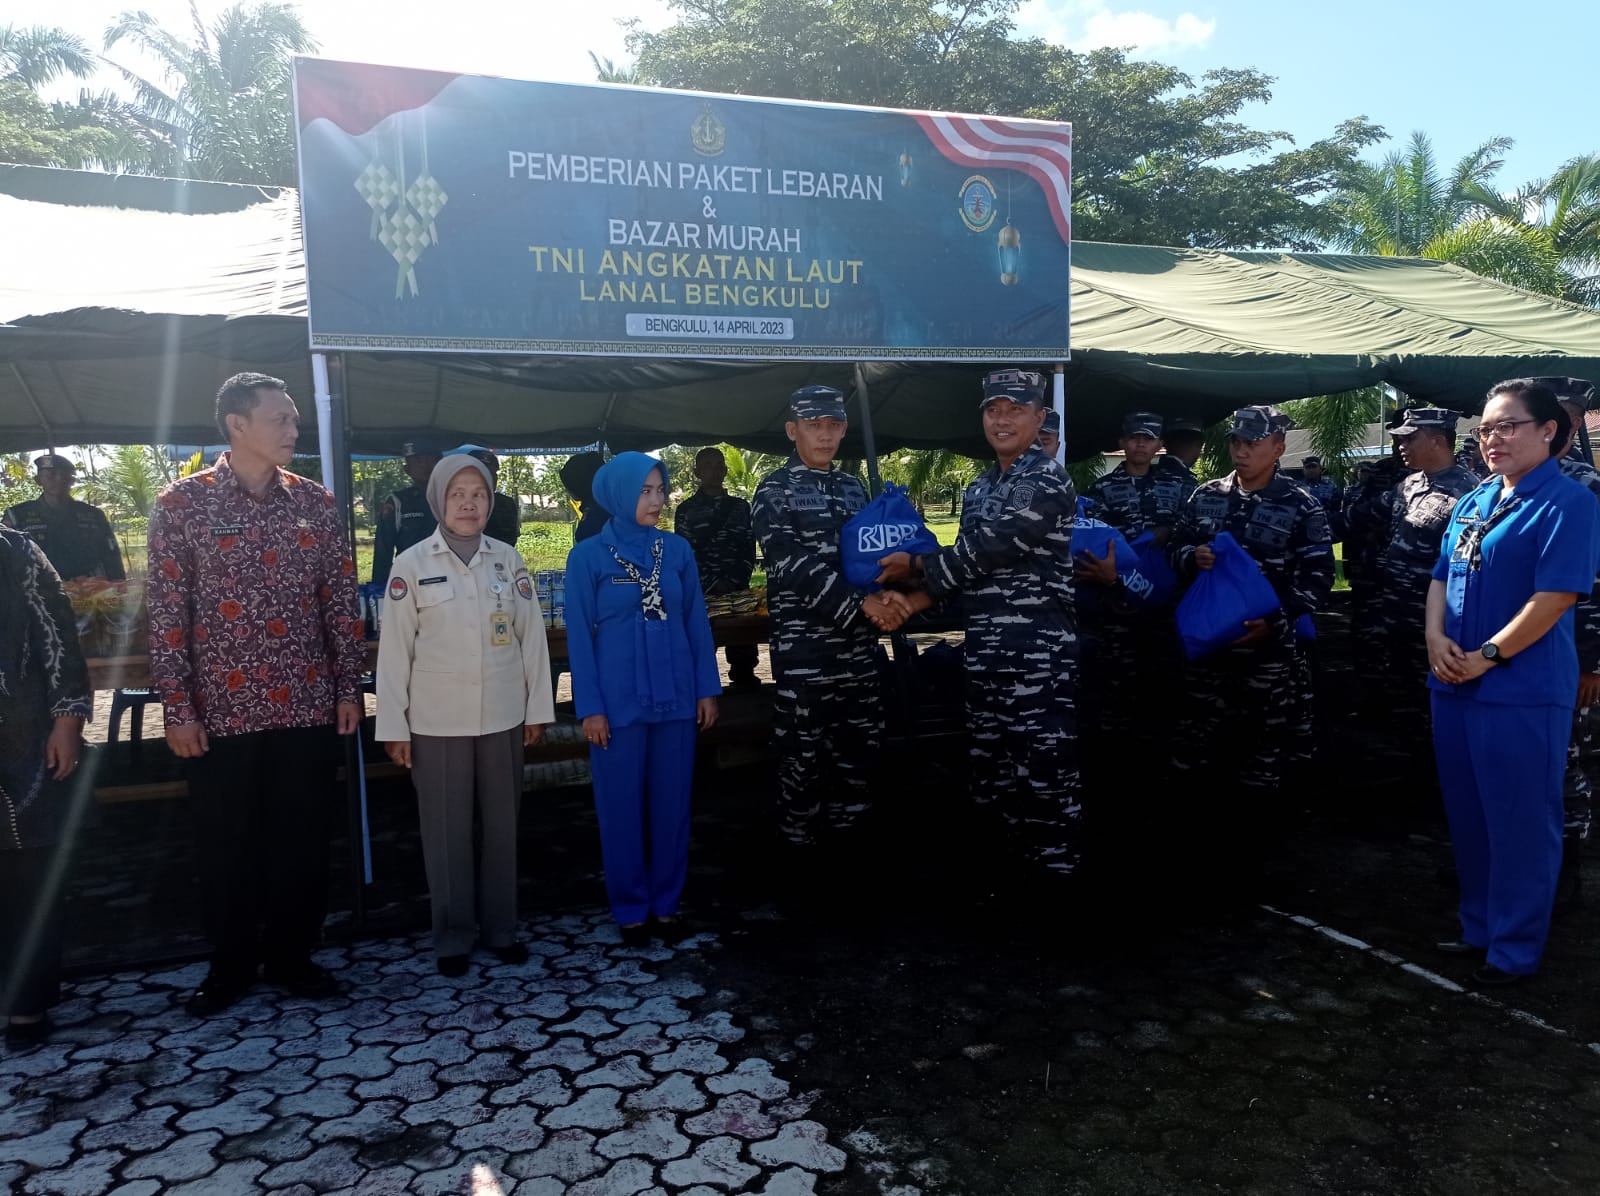 TNI AL Lanal Bengkulu Bagikan Paket Lebaran dan Buka Bazar Sembako Murah